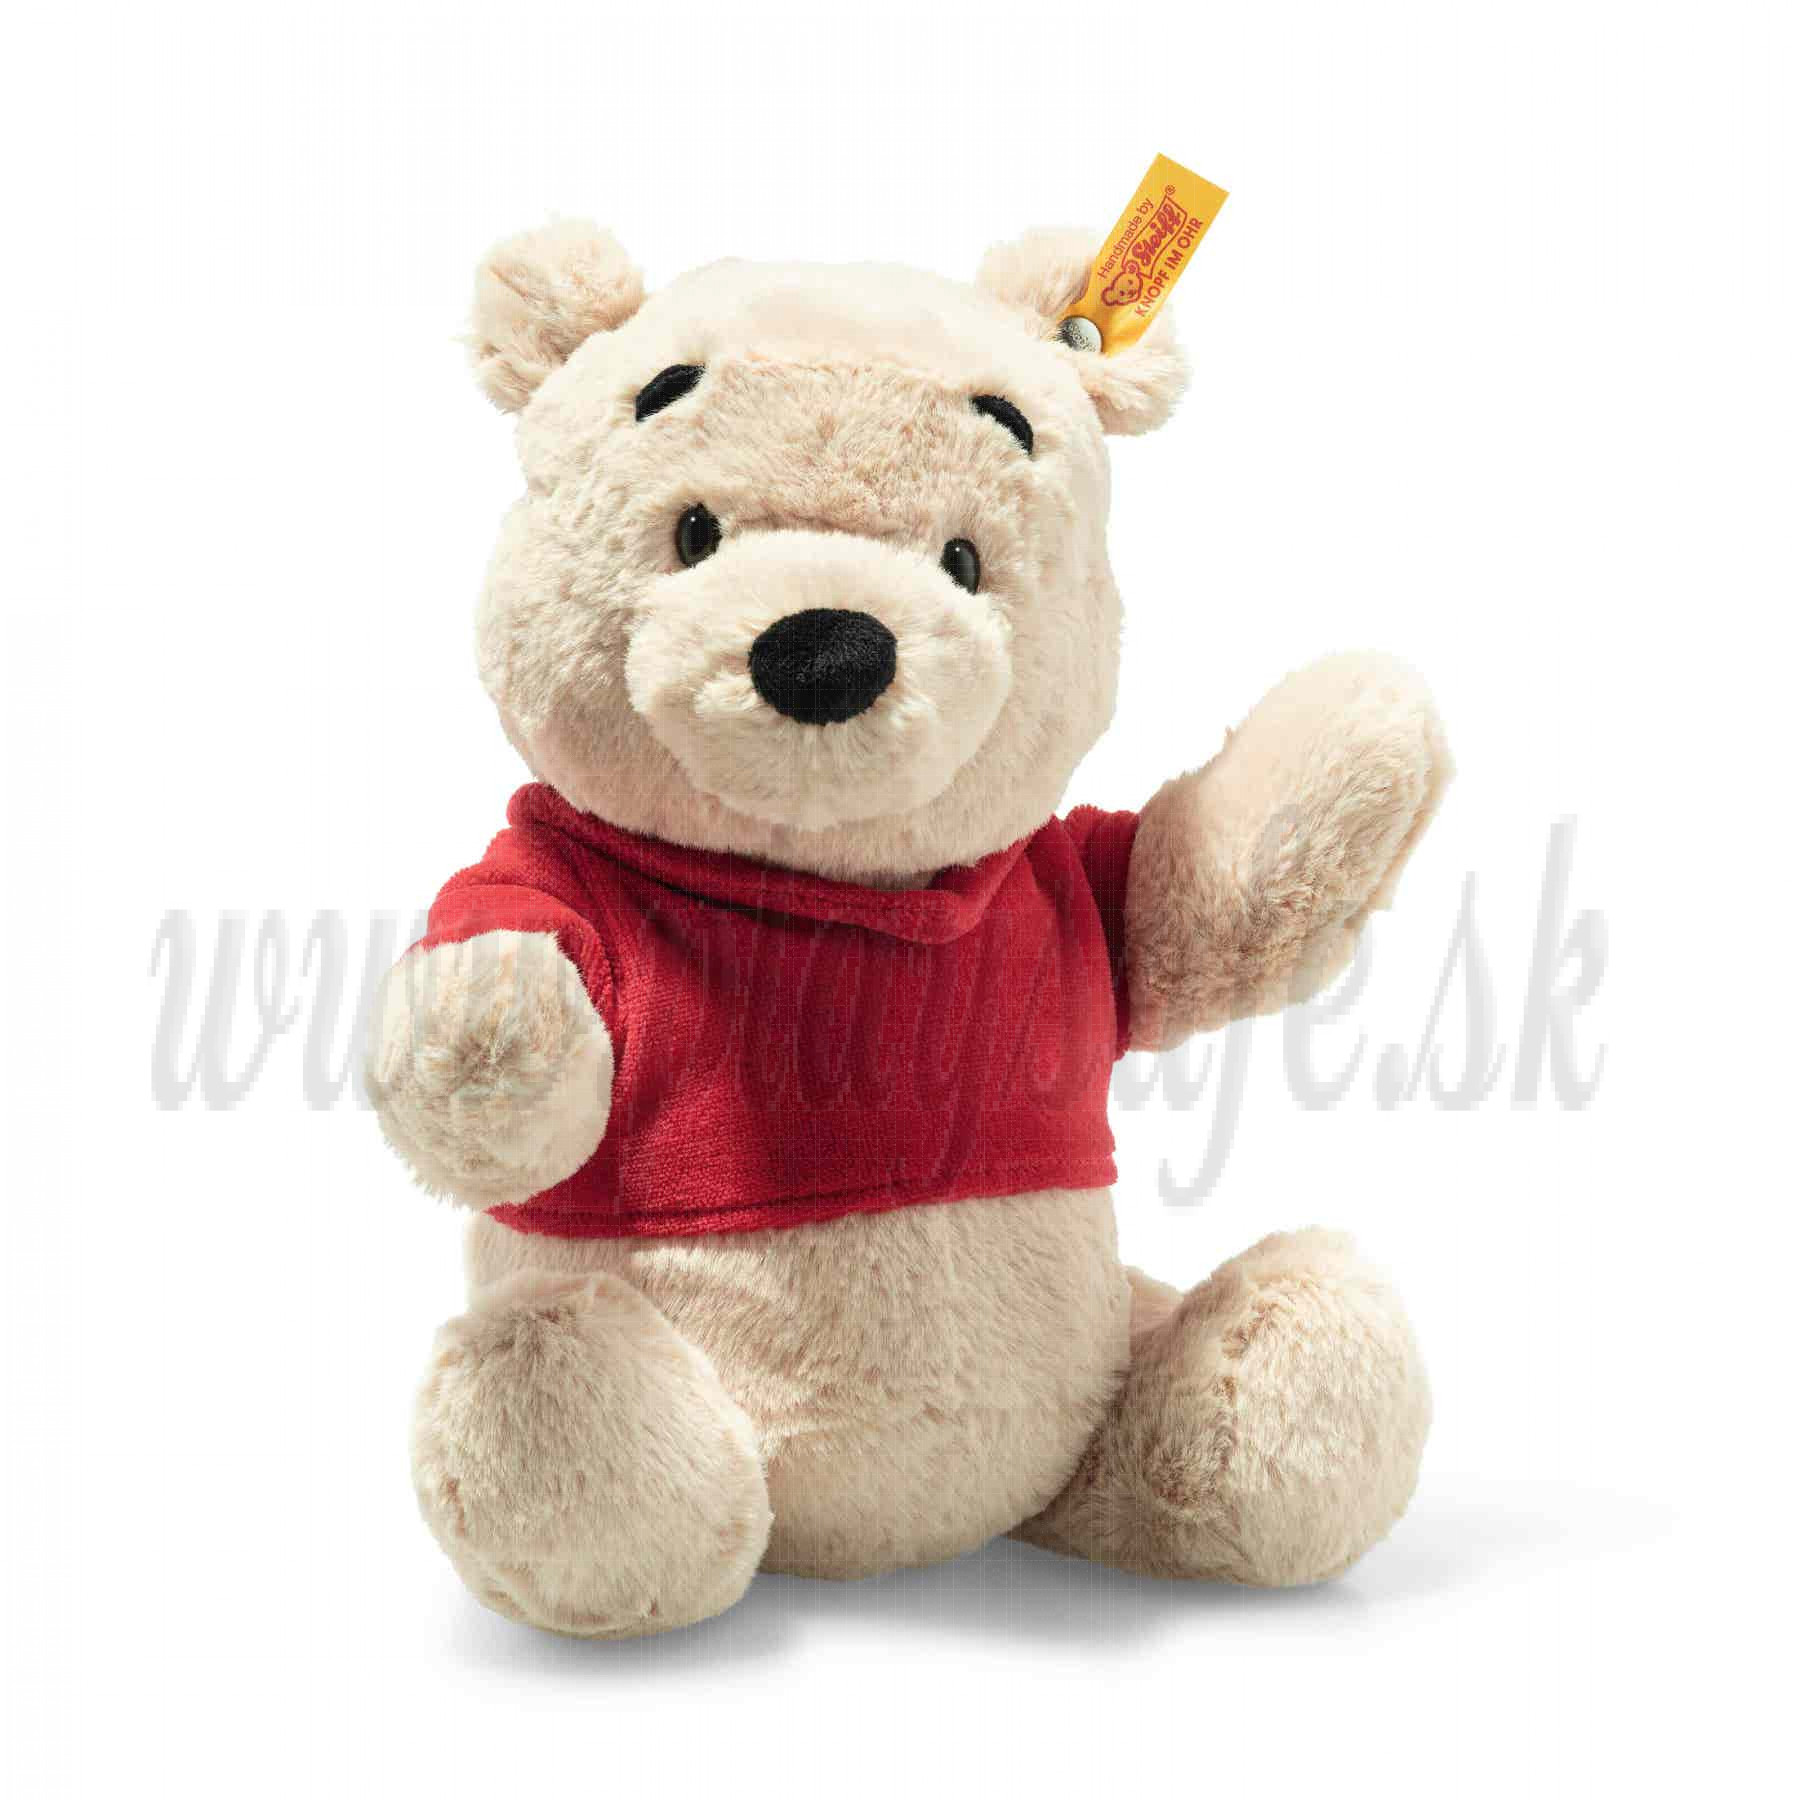 Steiff Teddy Bear Disney Originals Winnie the Pooh, 29cm